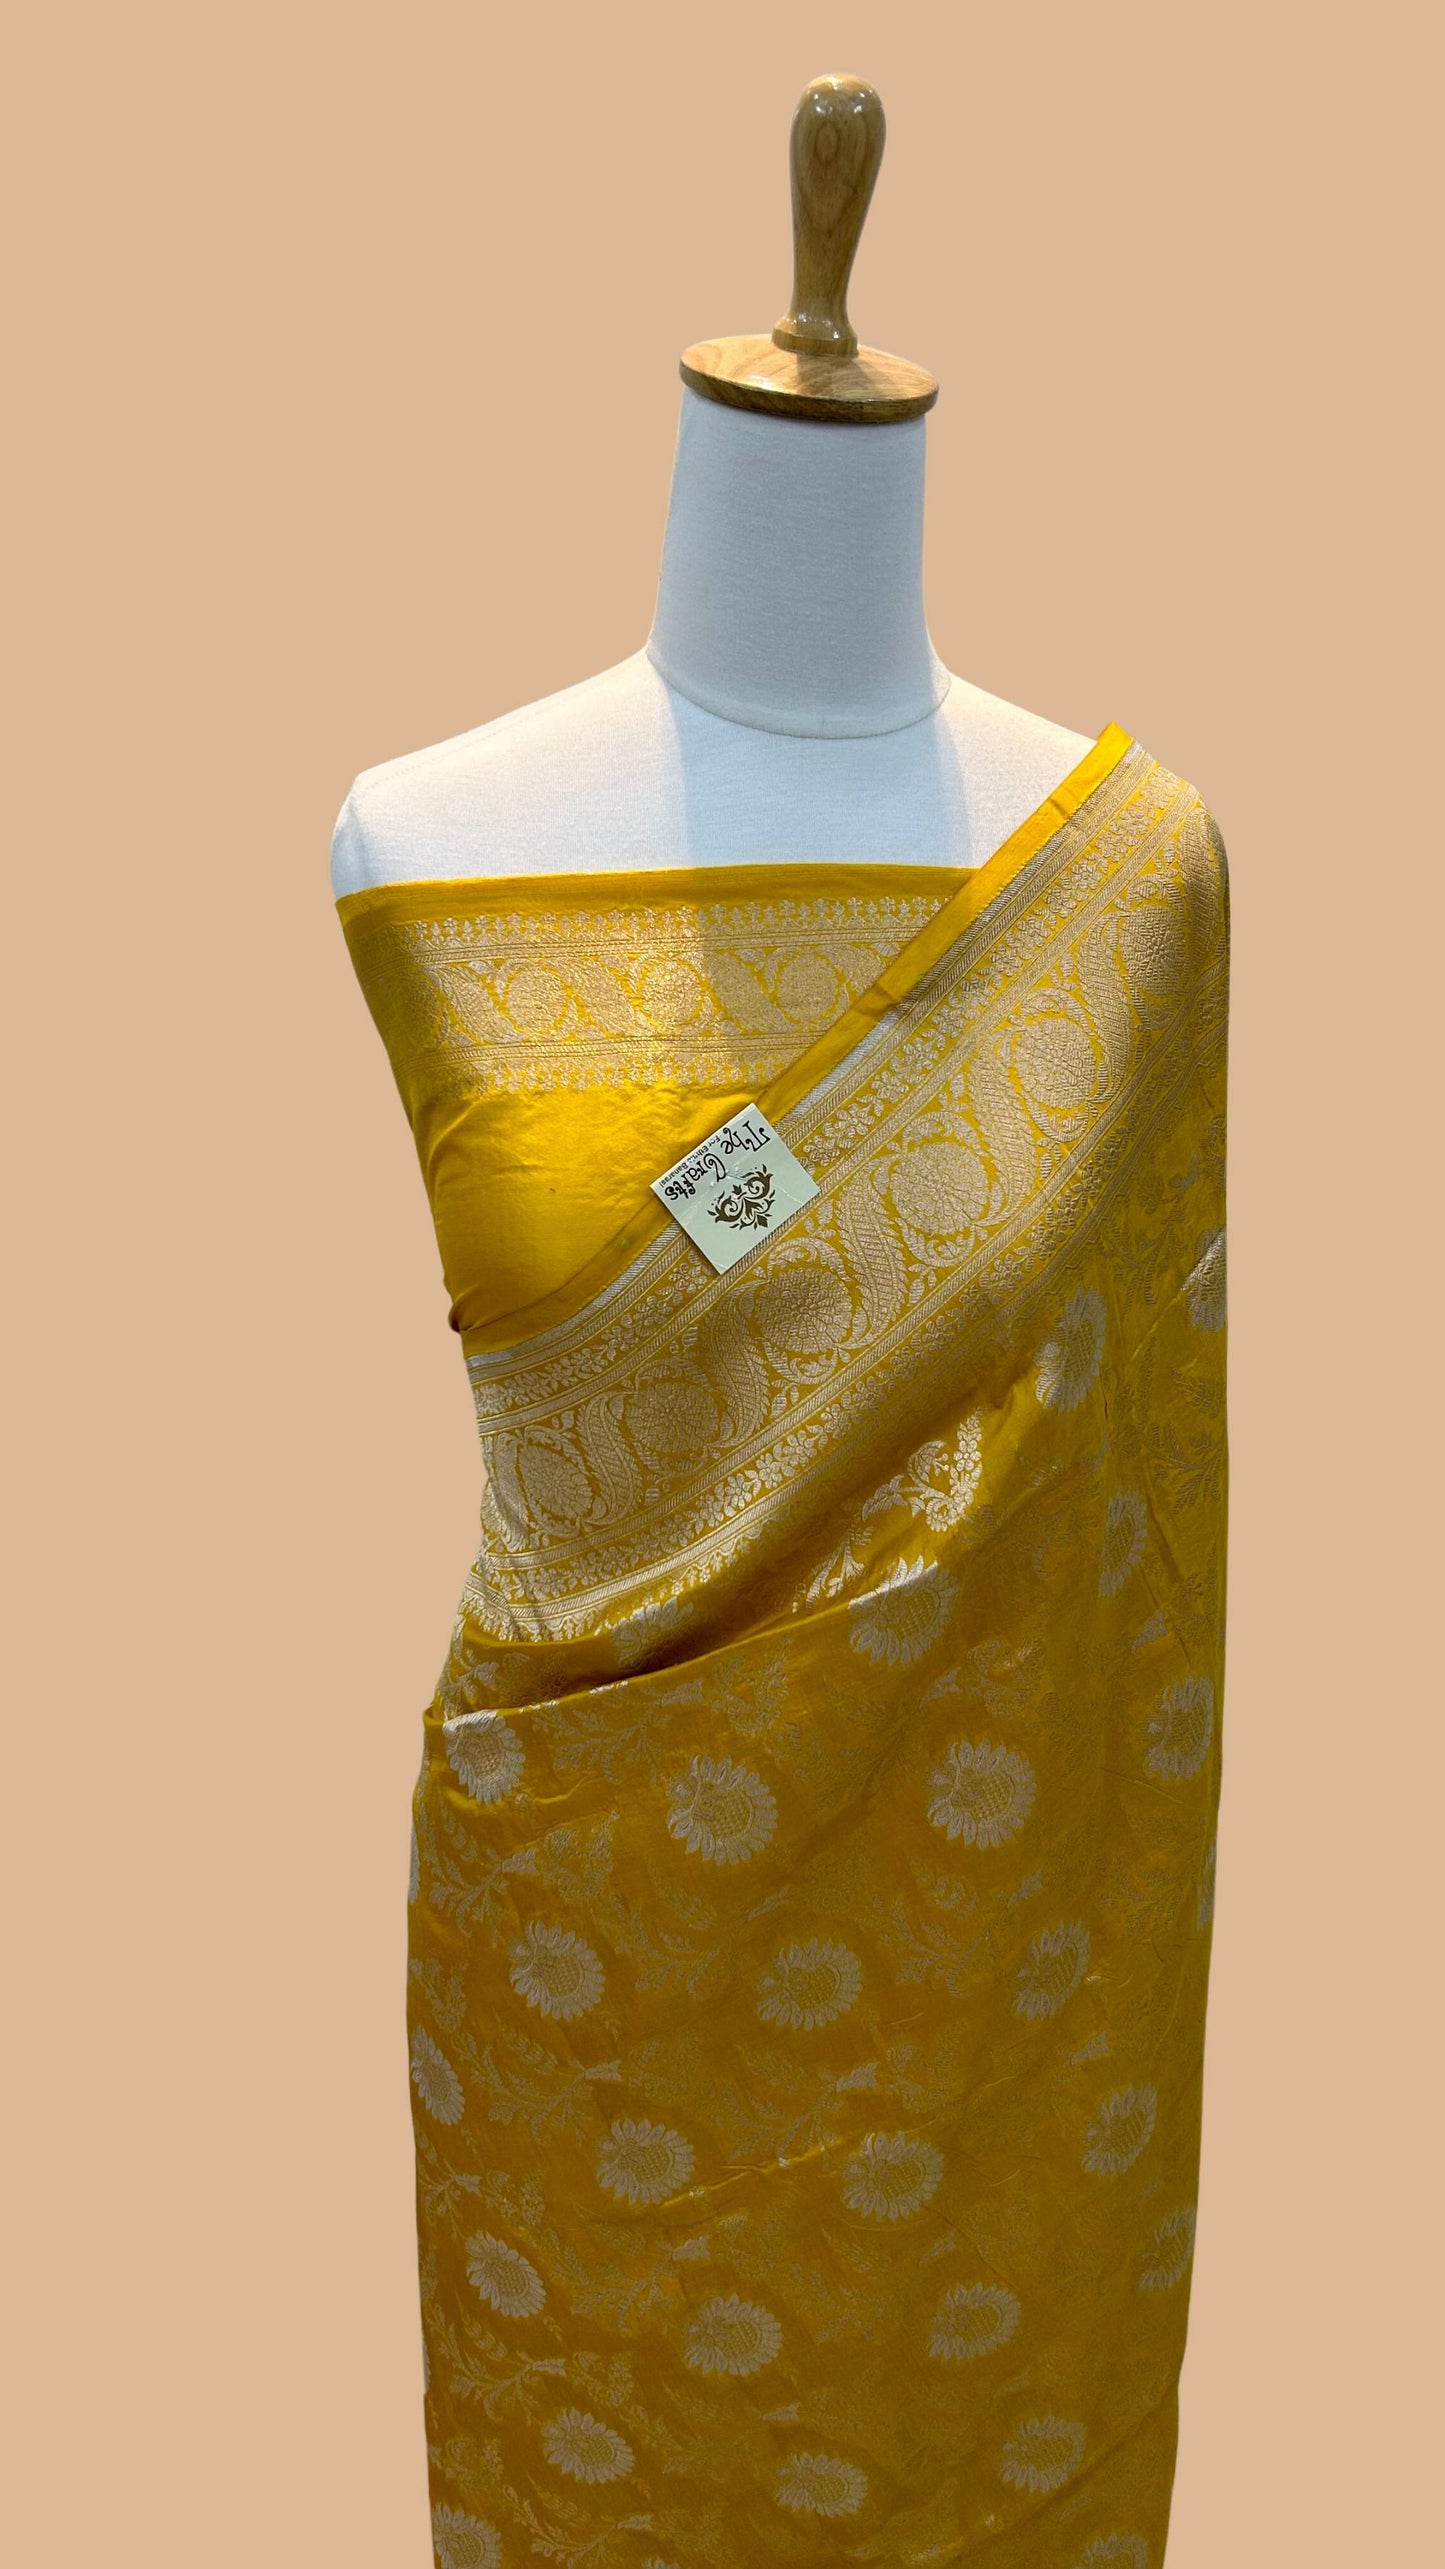 Pure Katan Silk Handloom Banarasi Saree - All over sona roopa Jaal work